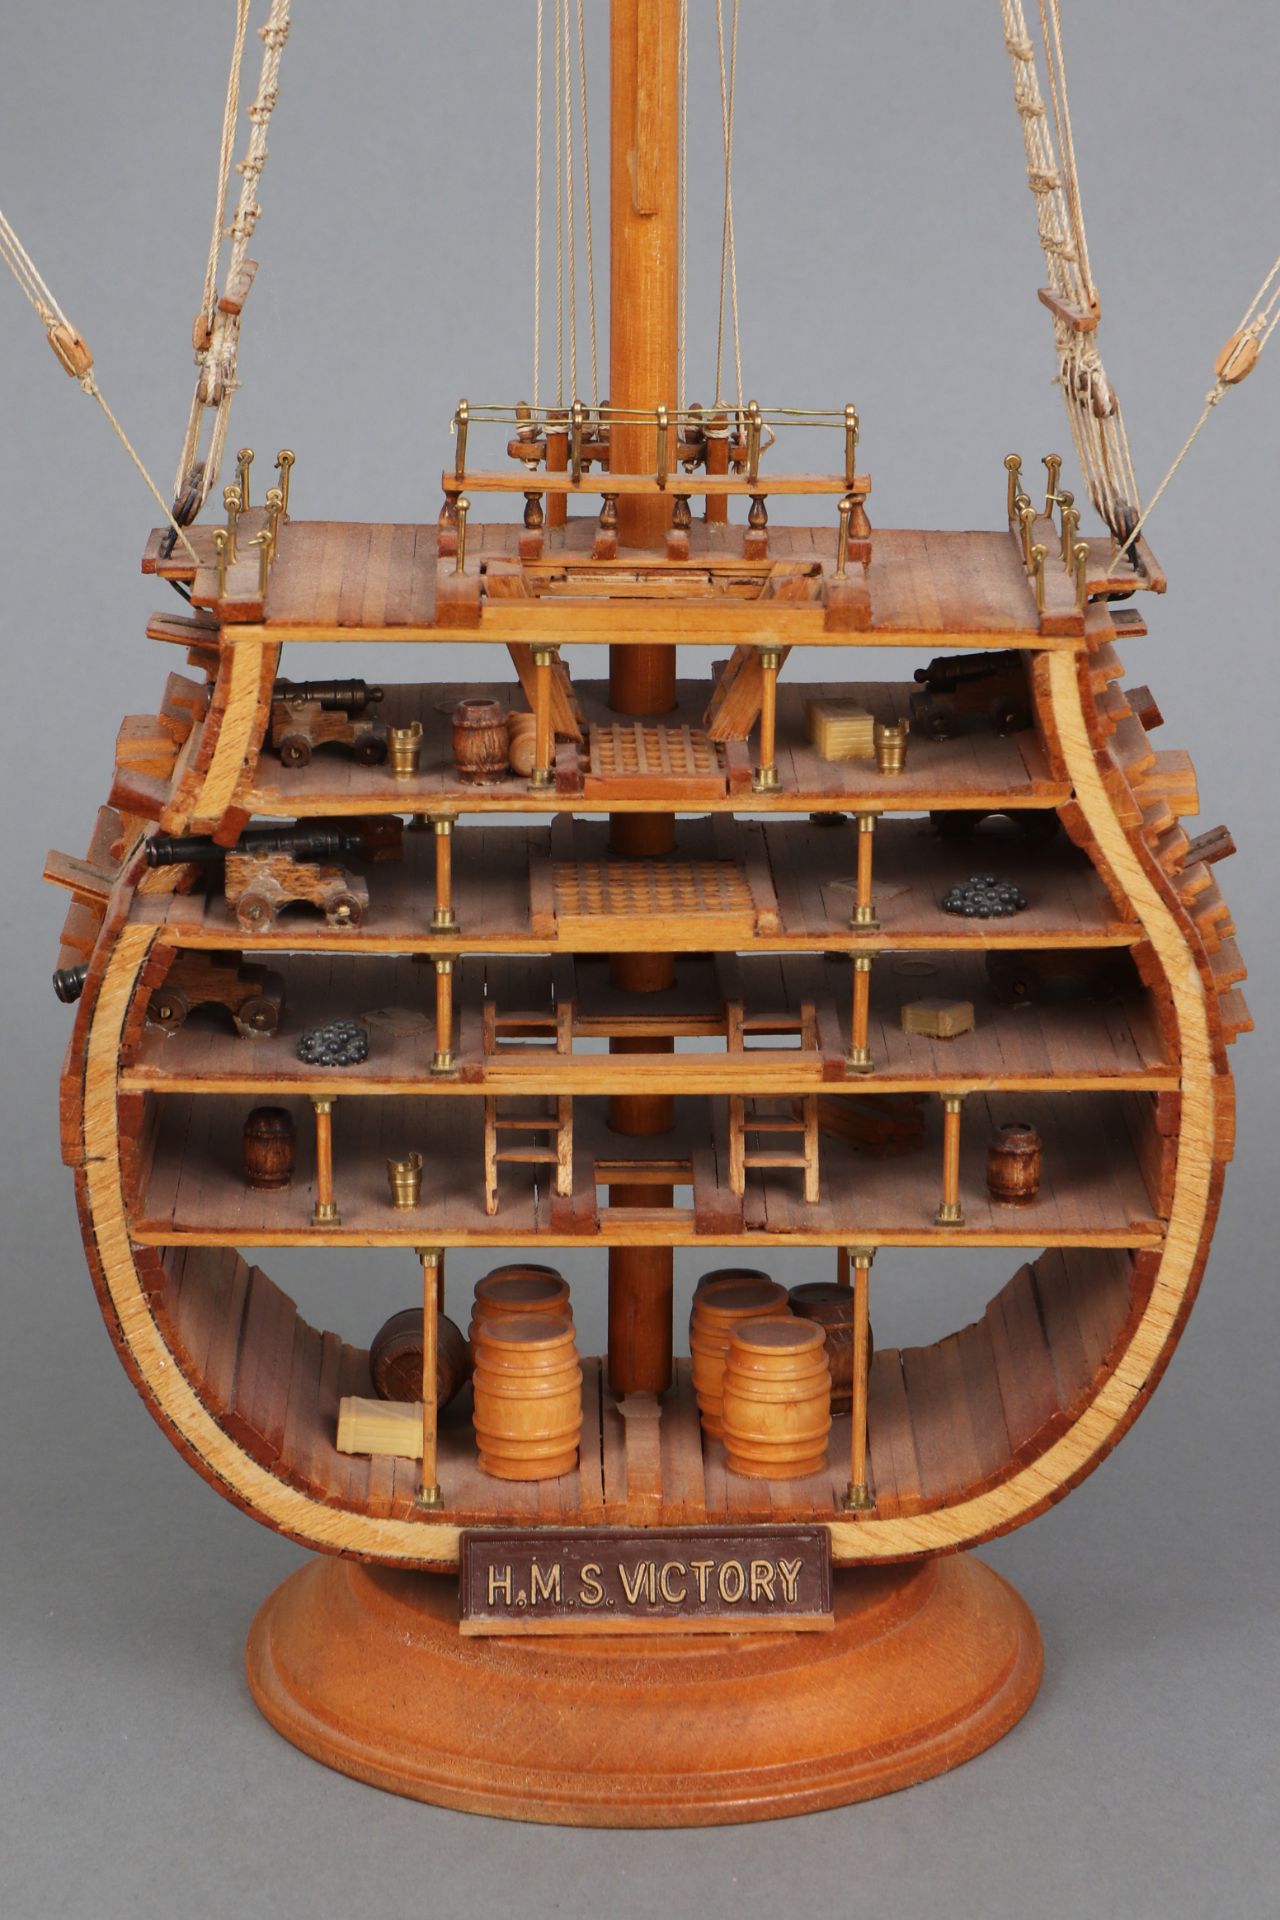 Modell der HMS Victory (Querschnitt) - Image 3 of 6